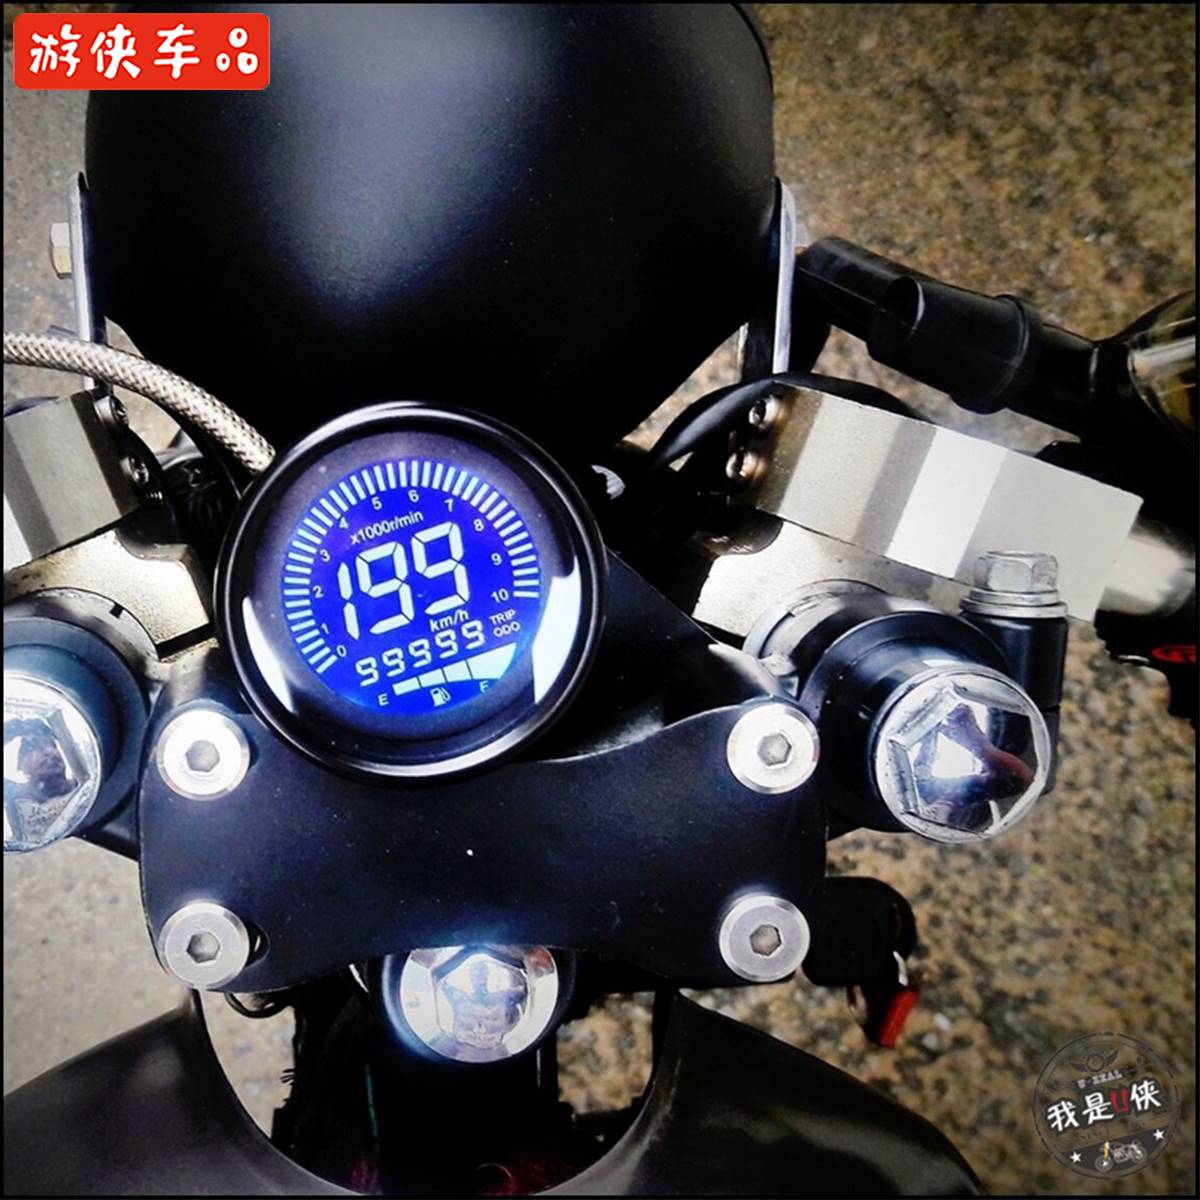 CG游侠GN天俊复古摩托车改装通用机械液晶数显转速里程码表小仪表